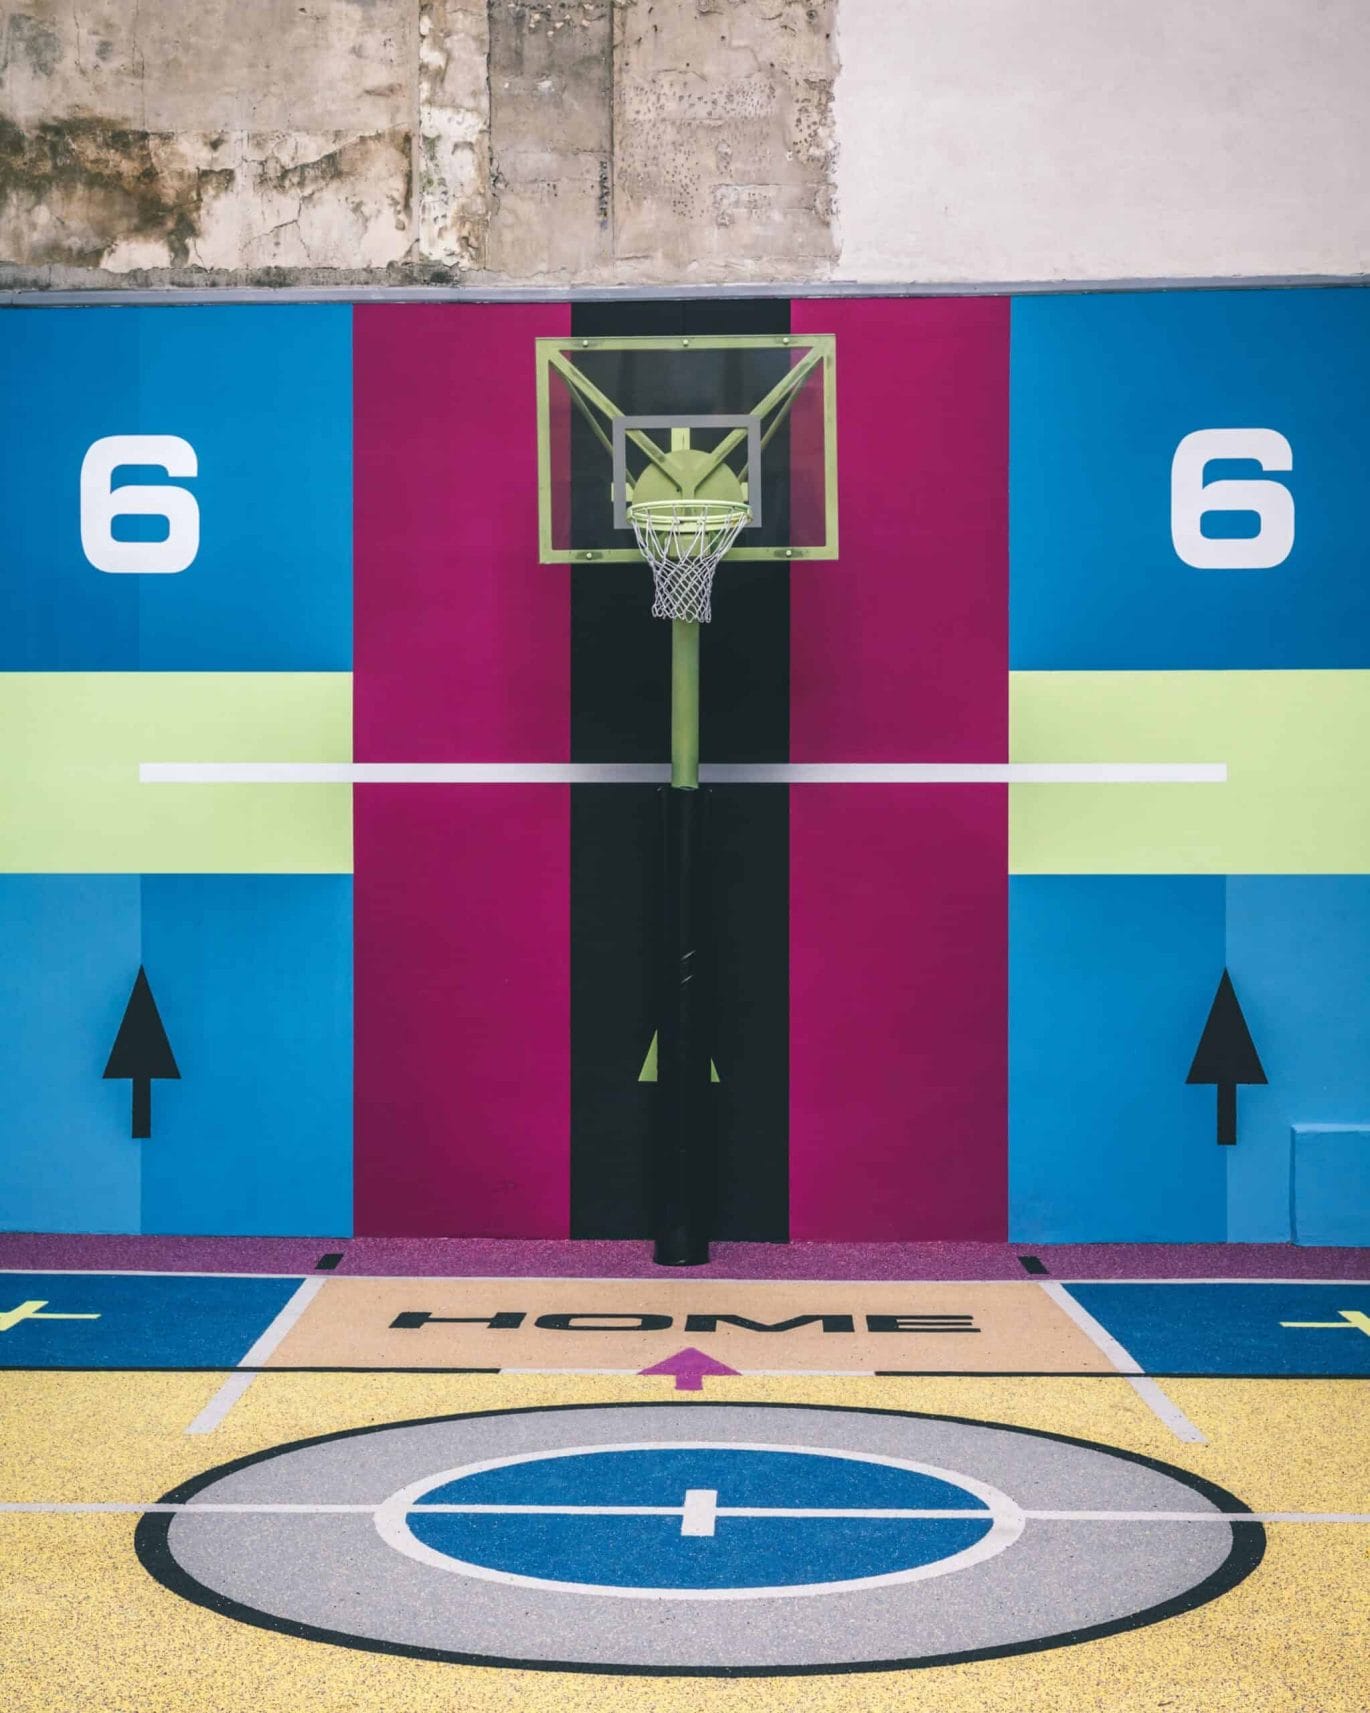 Het nieuwe basketbalveld van Pigalle in Parijs